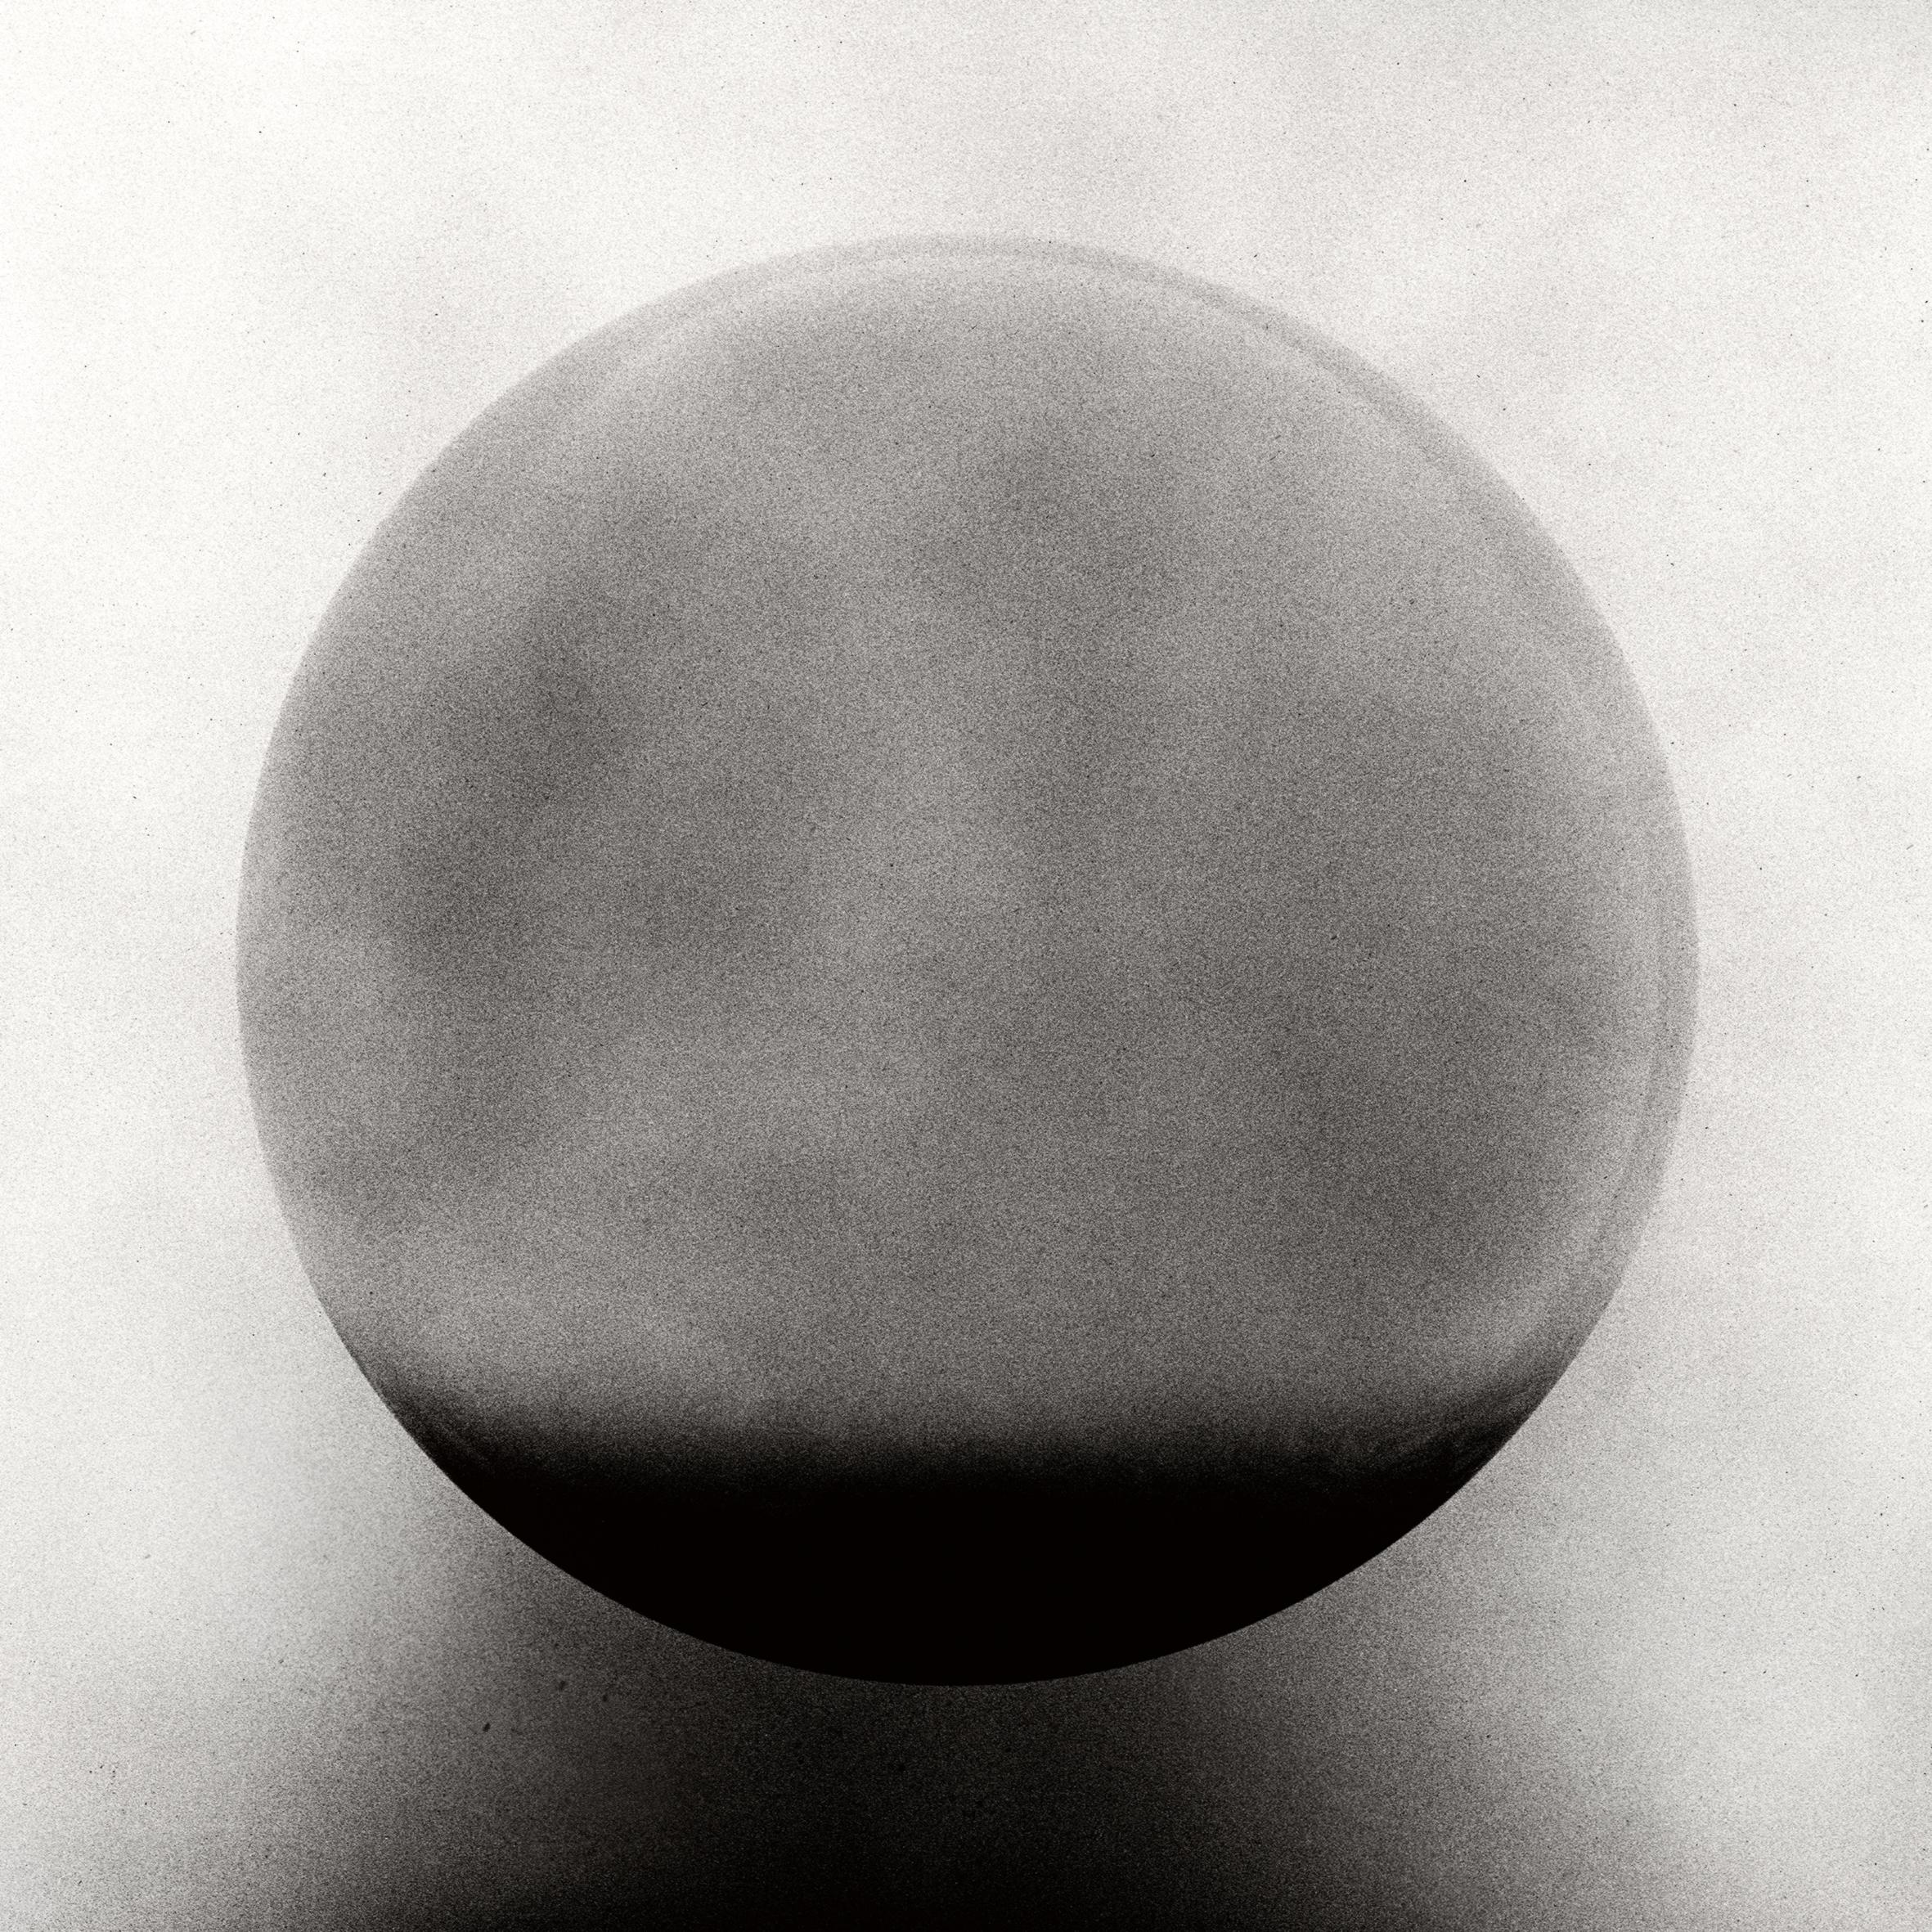 Sphère - Photographie argentique de nature morte en noir et blanc, édition limitée à 10 exemplaires